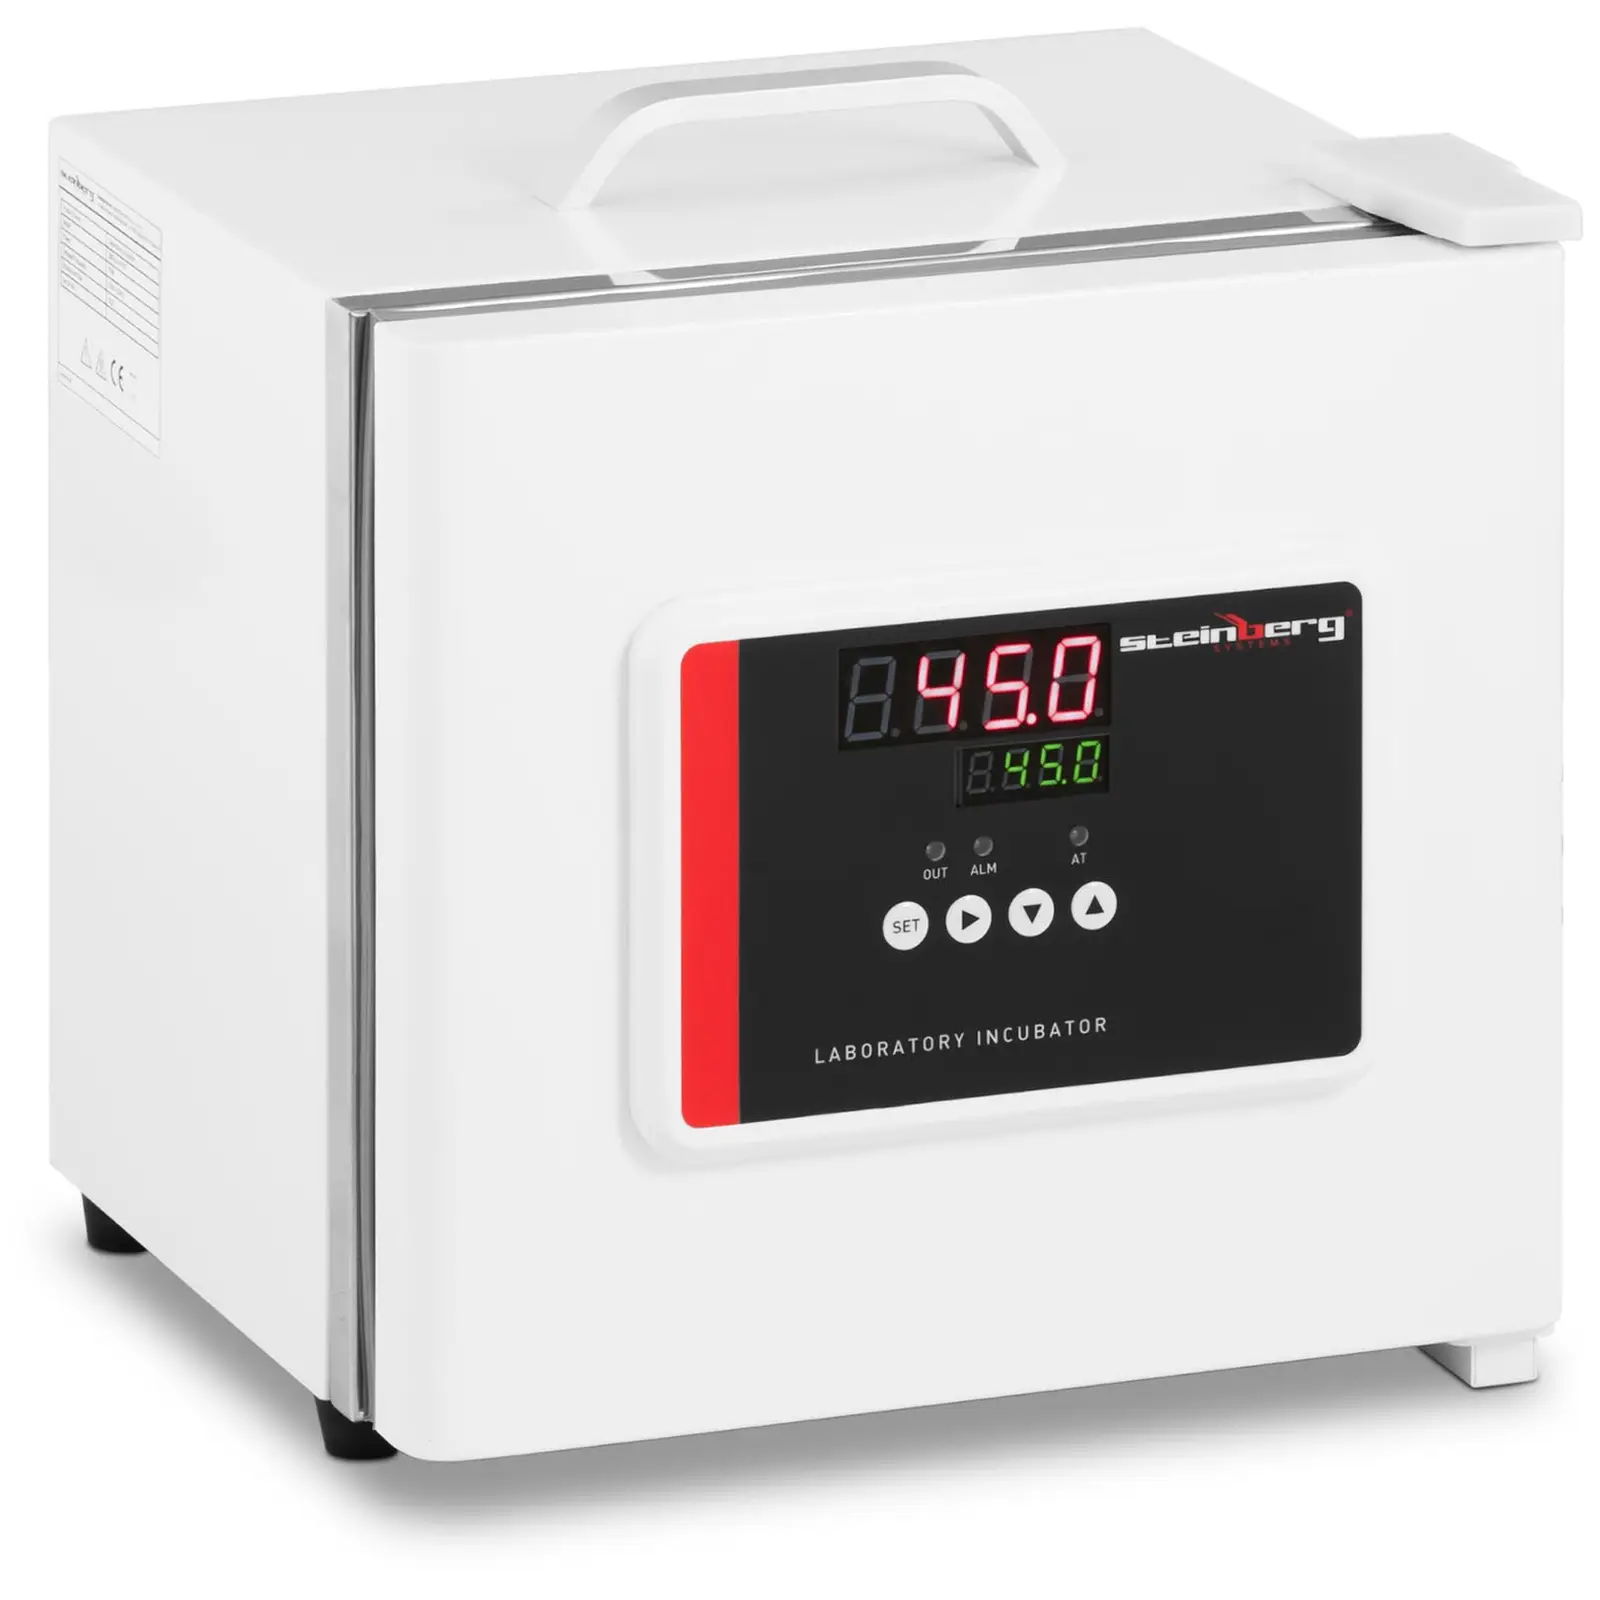 Laboratórny inkubátor - do 45 °C - 7,5 l - 12 V DC